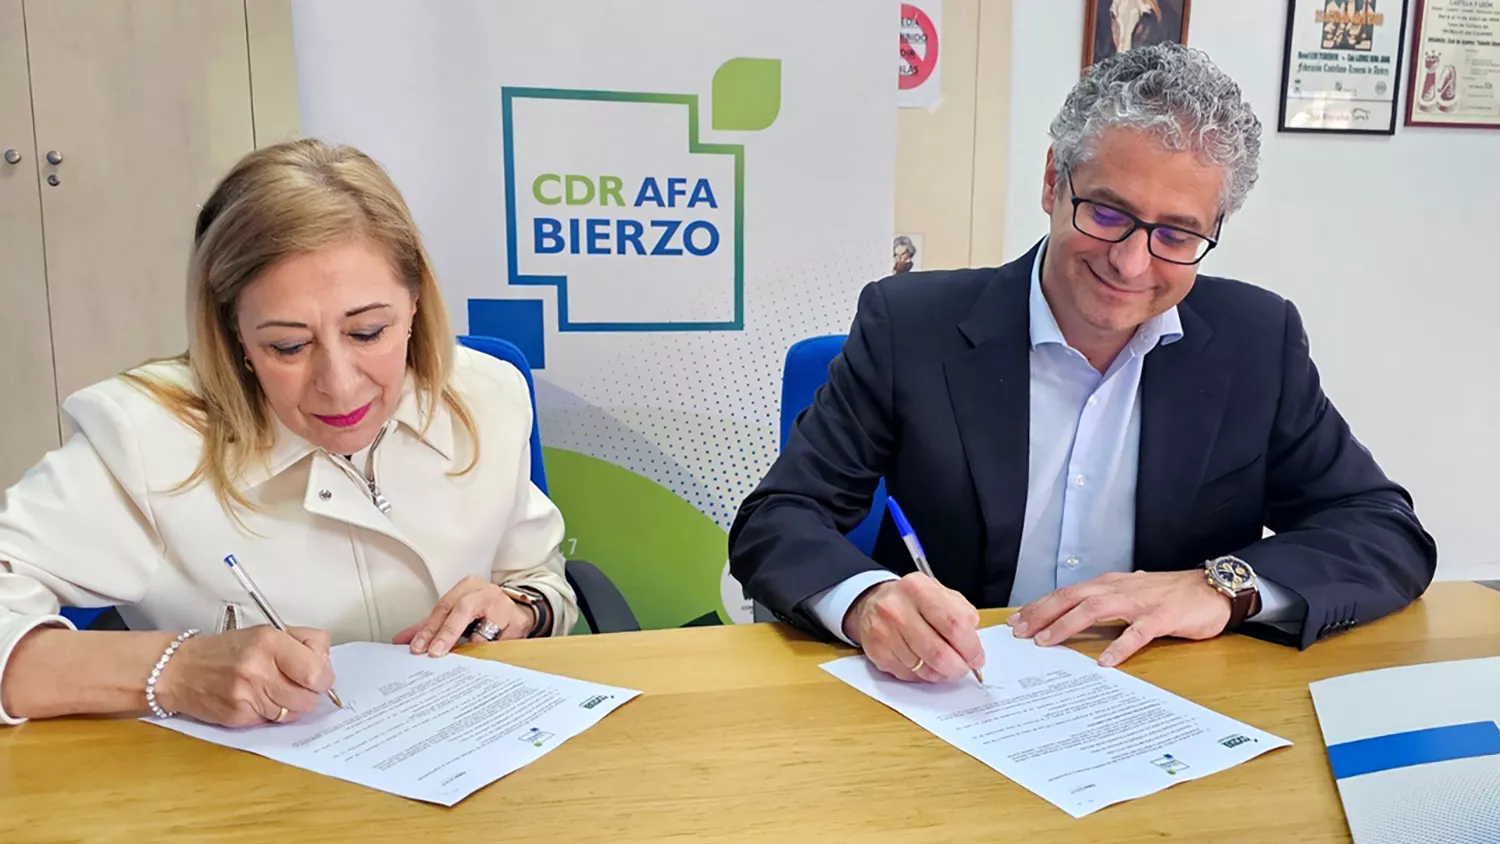 La Fundación Cupa Group firma un convenio de colaboración con el Centro de Desarrollo Rural Afa Bierzo